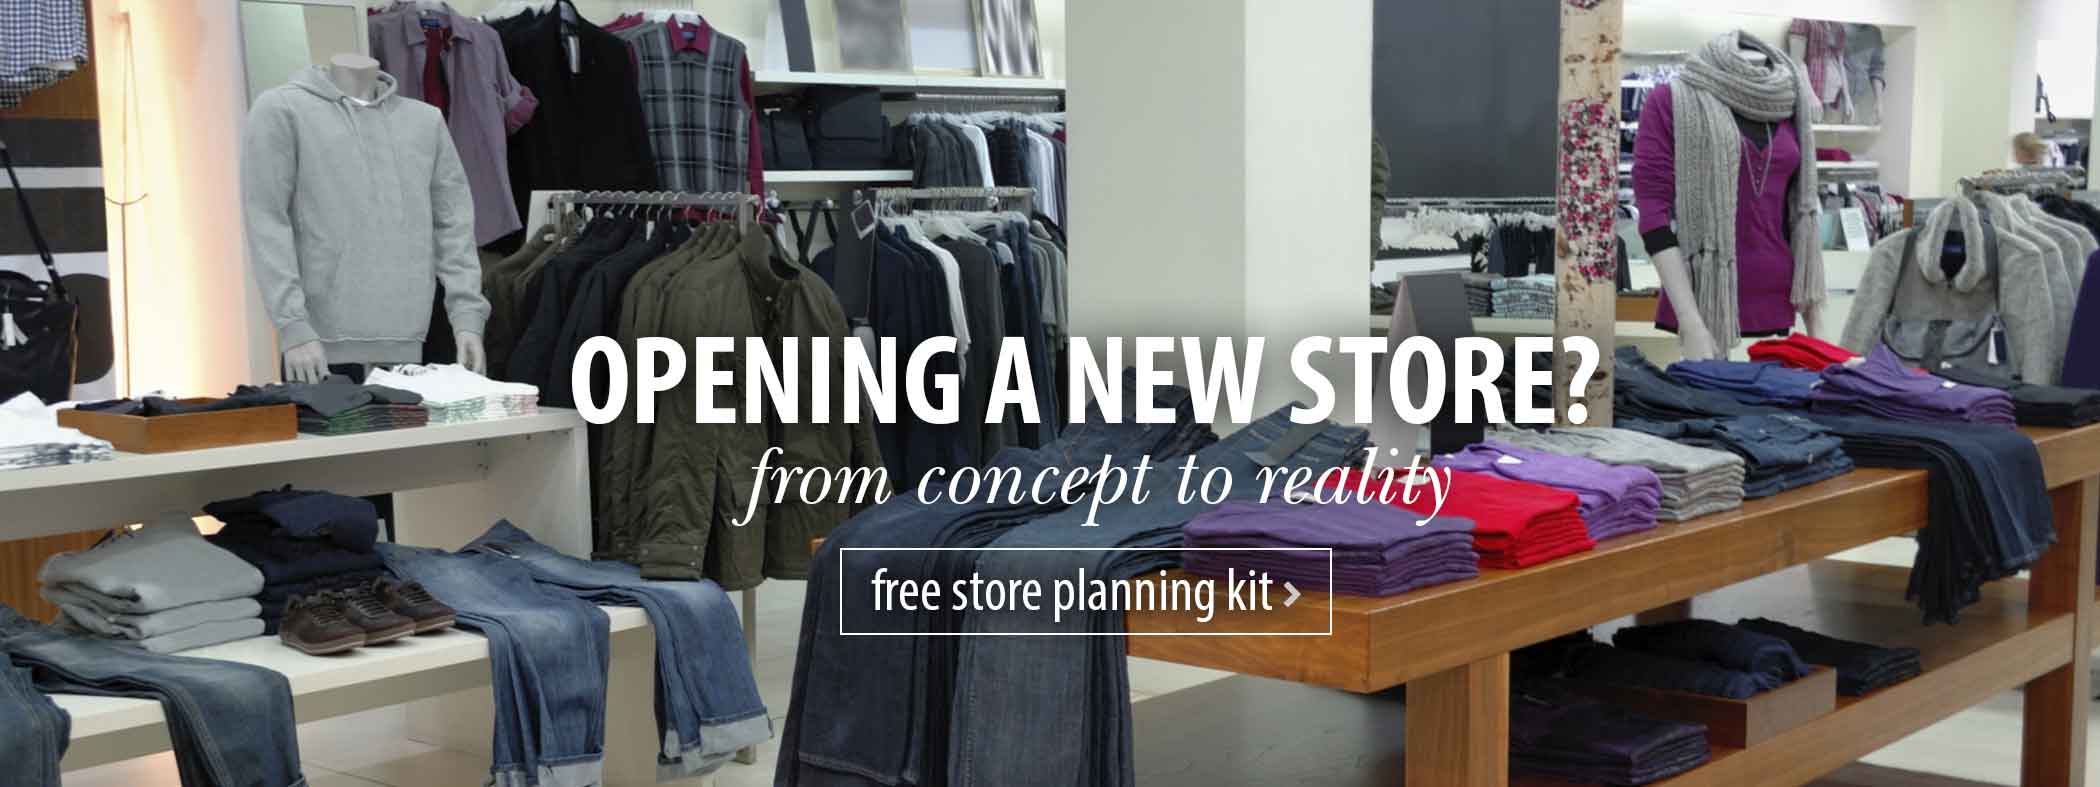 Free Store Planning Kit